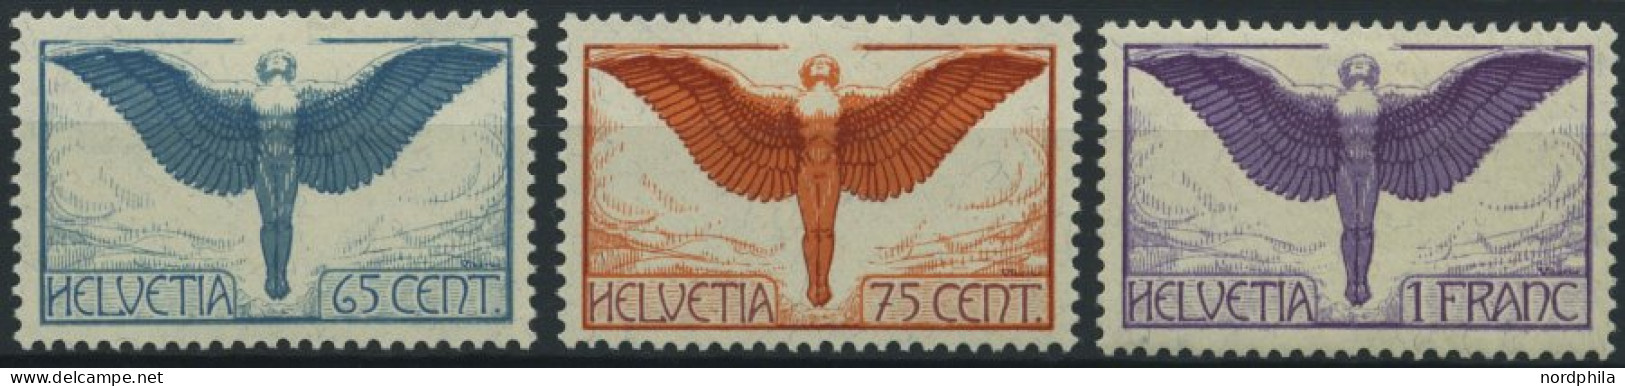 SCHWEIZ BUNDESPOST 189-91x , 1924, Flugpostmarken, Gewöhnliches Papier, Falzrest, Prachtsatz - Unused Stamps